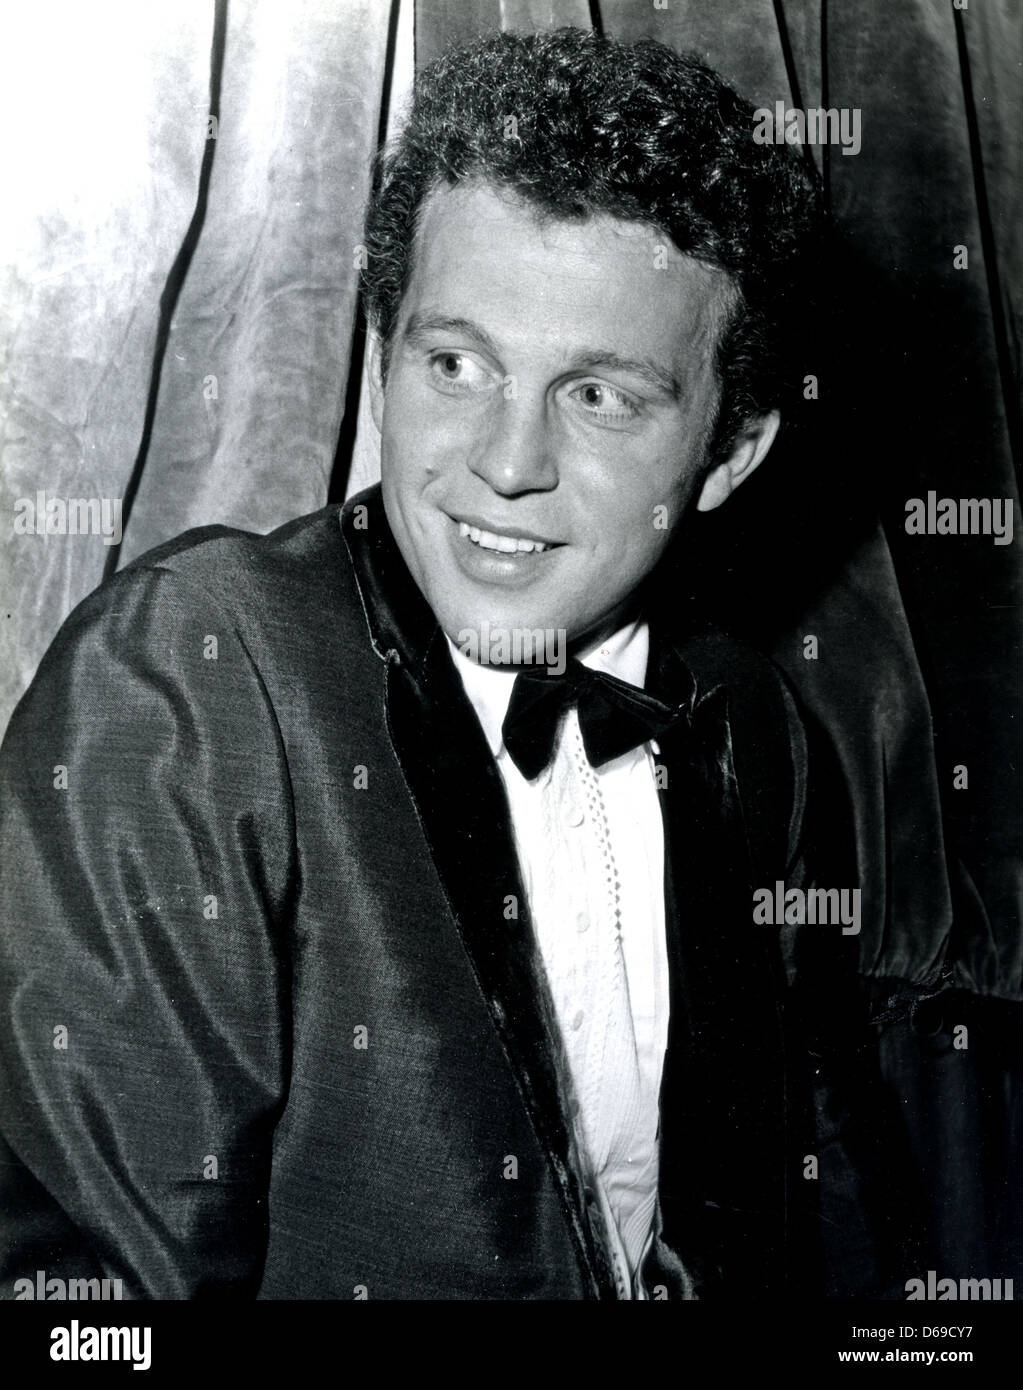 BOBBY VINTON US cantante pop circa 1965 Foto Stock